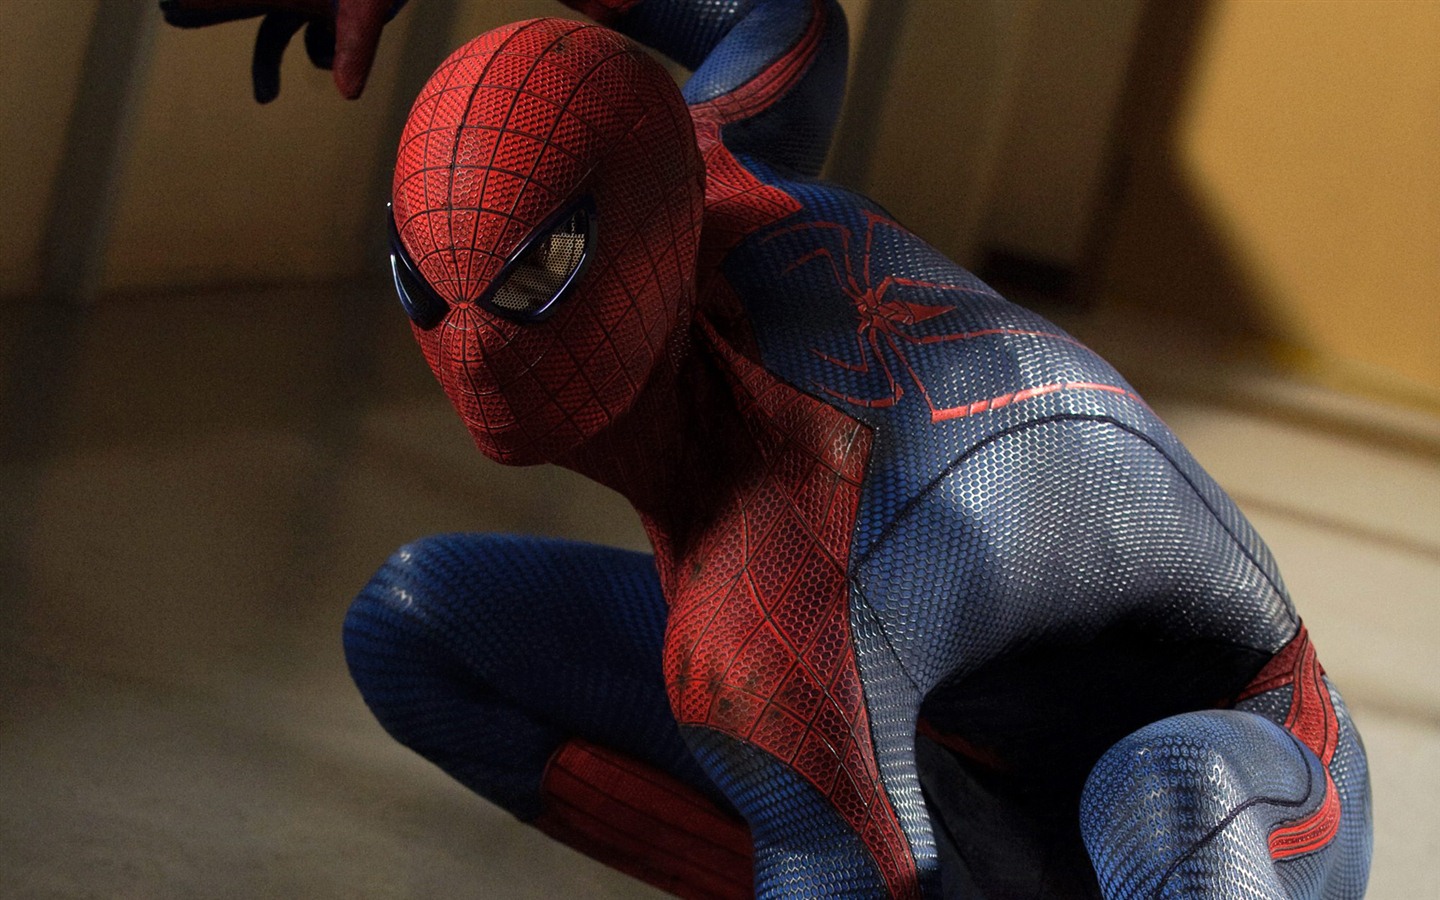 The Amazing Spider-Man 2012 惊奇蜘蛛侠2012 壁纸专辑3 - 1440x900